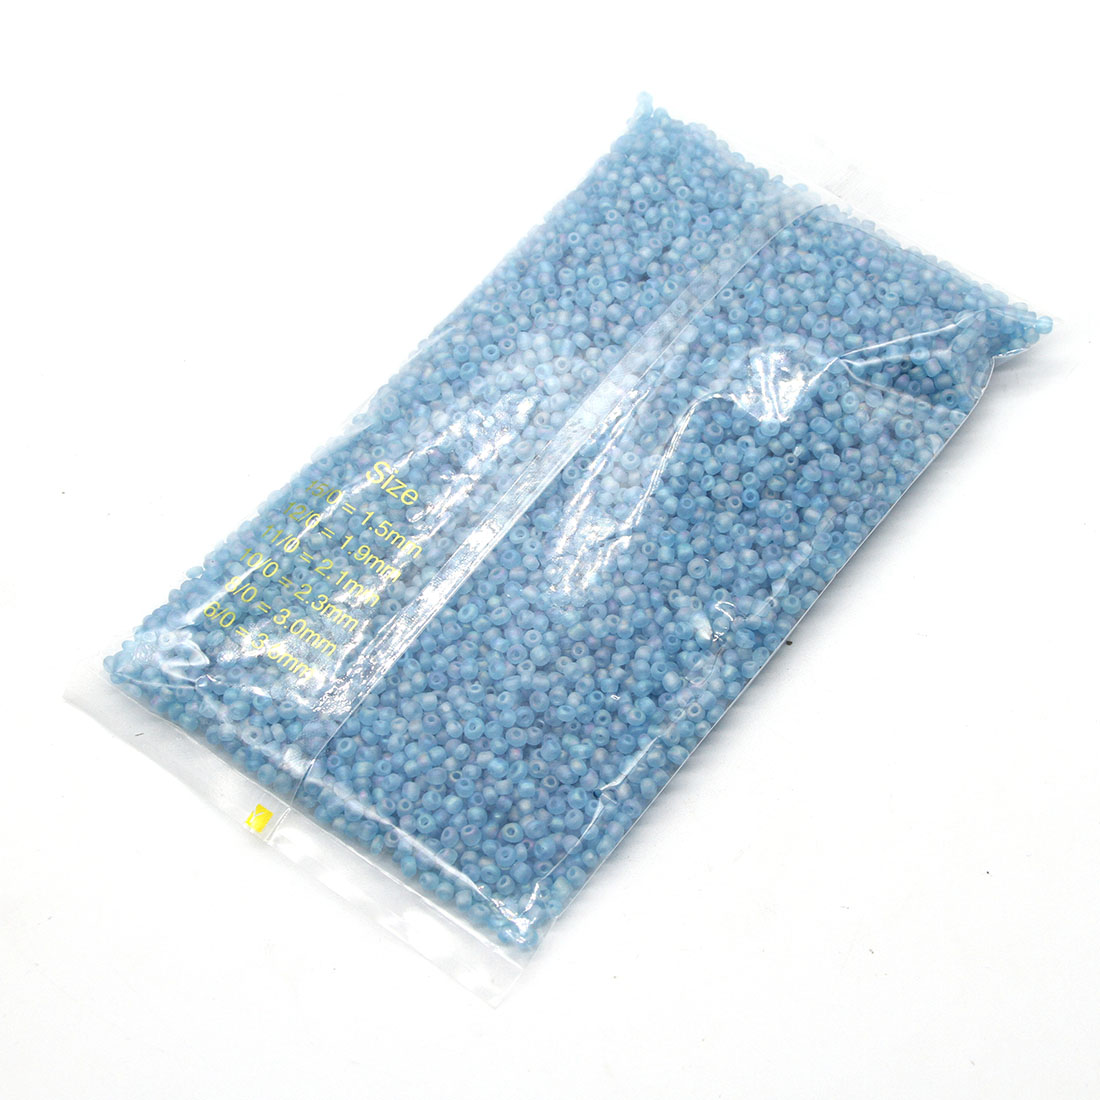 Blue 3mm 10,000 packs